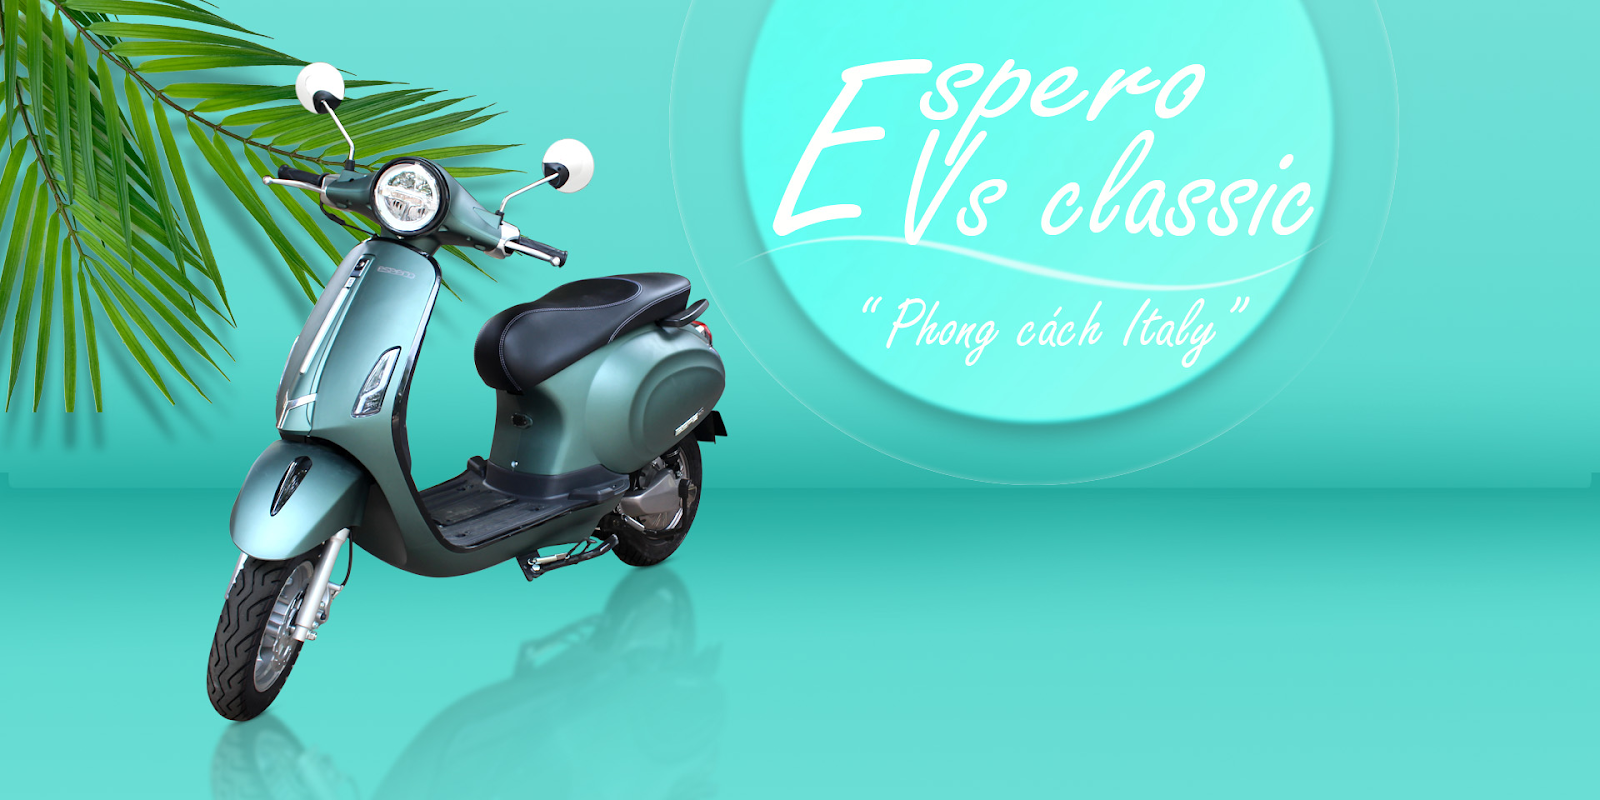 Xe máy điện an toàn cho học sinh nữ cấp 3 Vespa Classic Espero